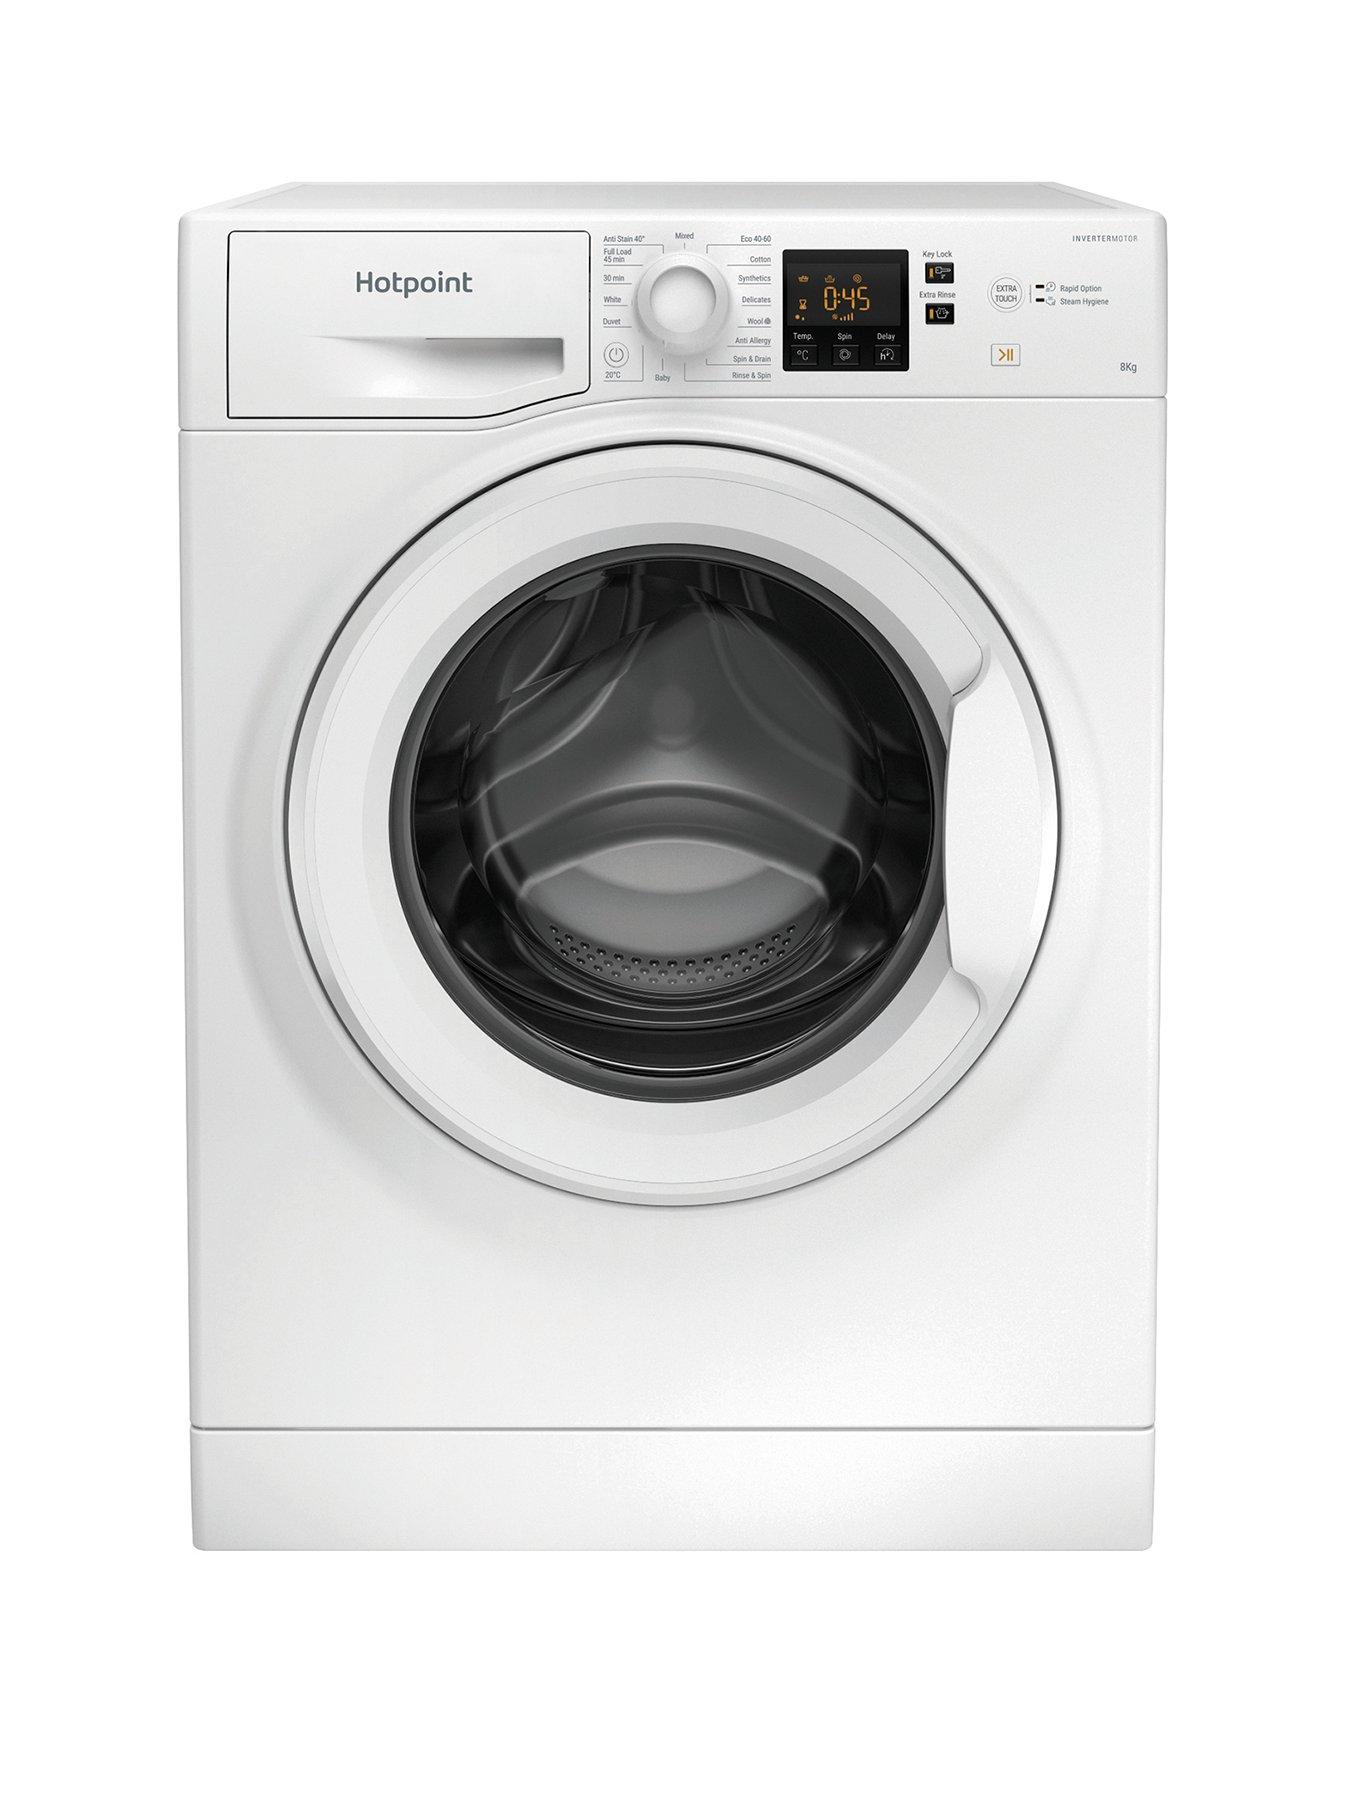 Buy LG TurboWash F4Y513WWLN1 13 kg 1400 Spin Washing Machine